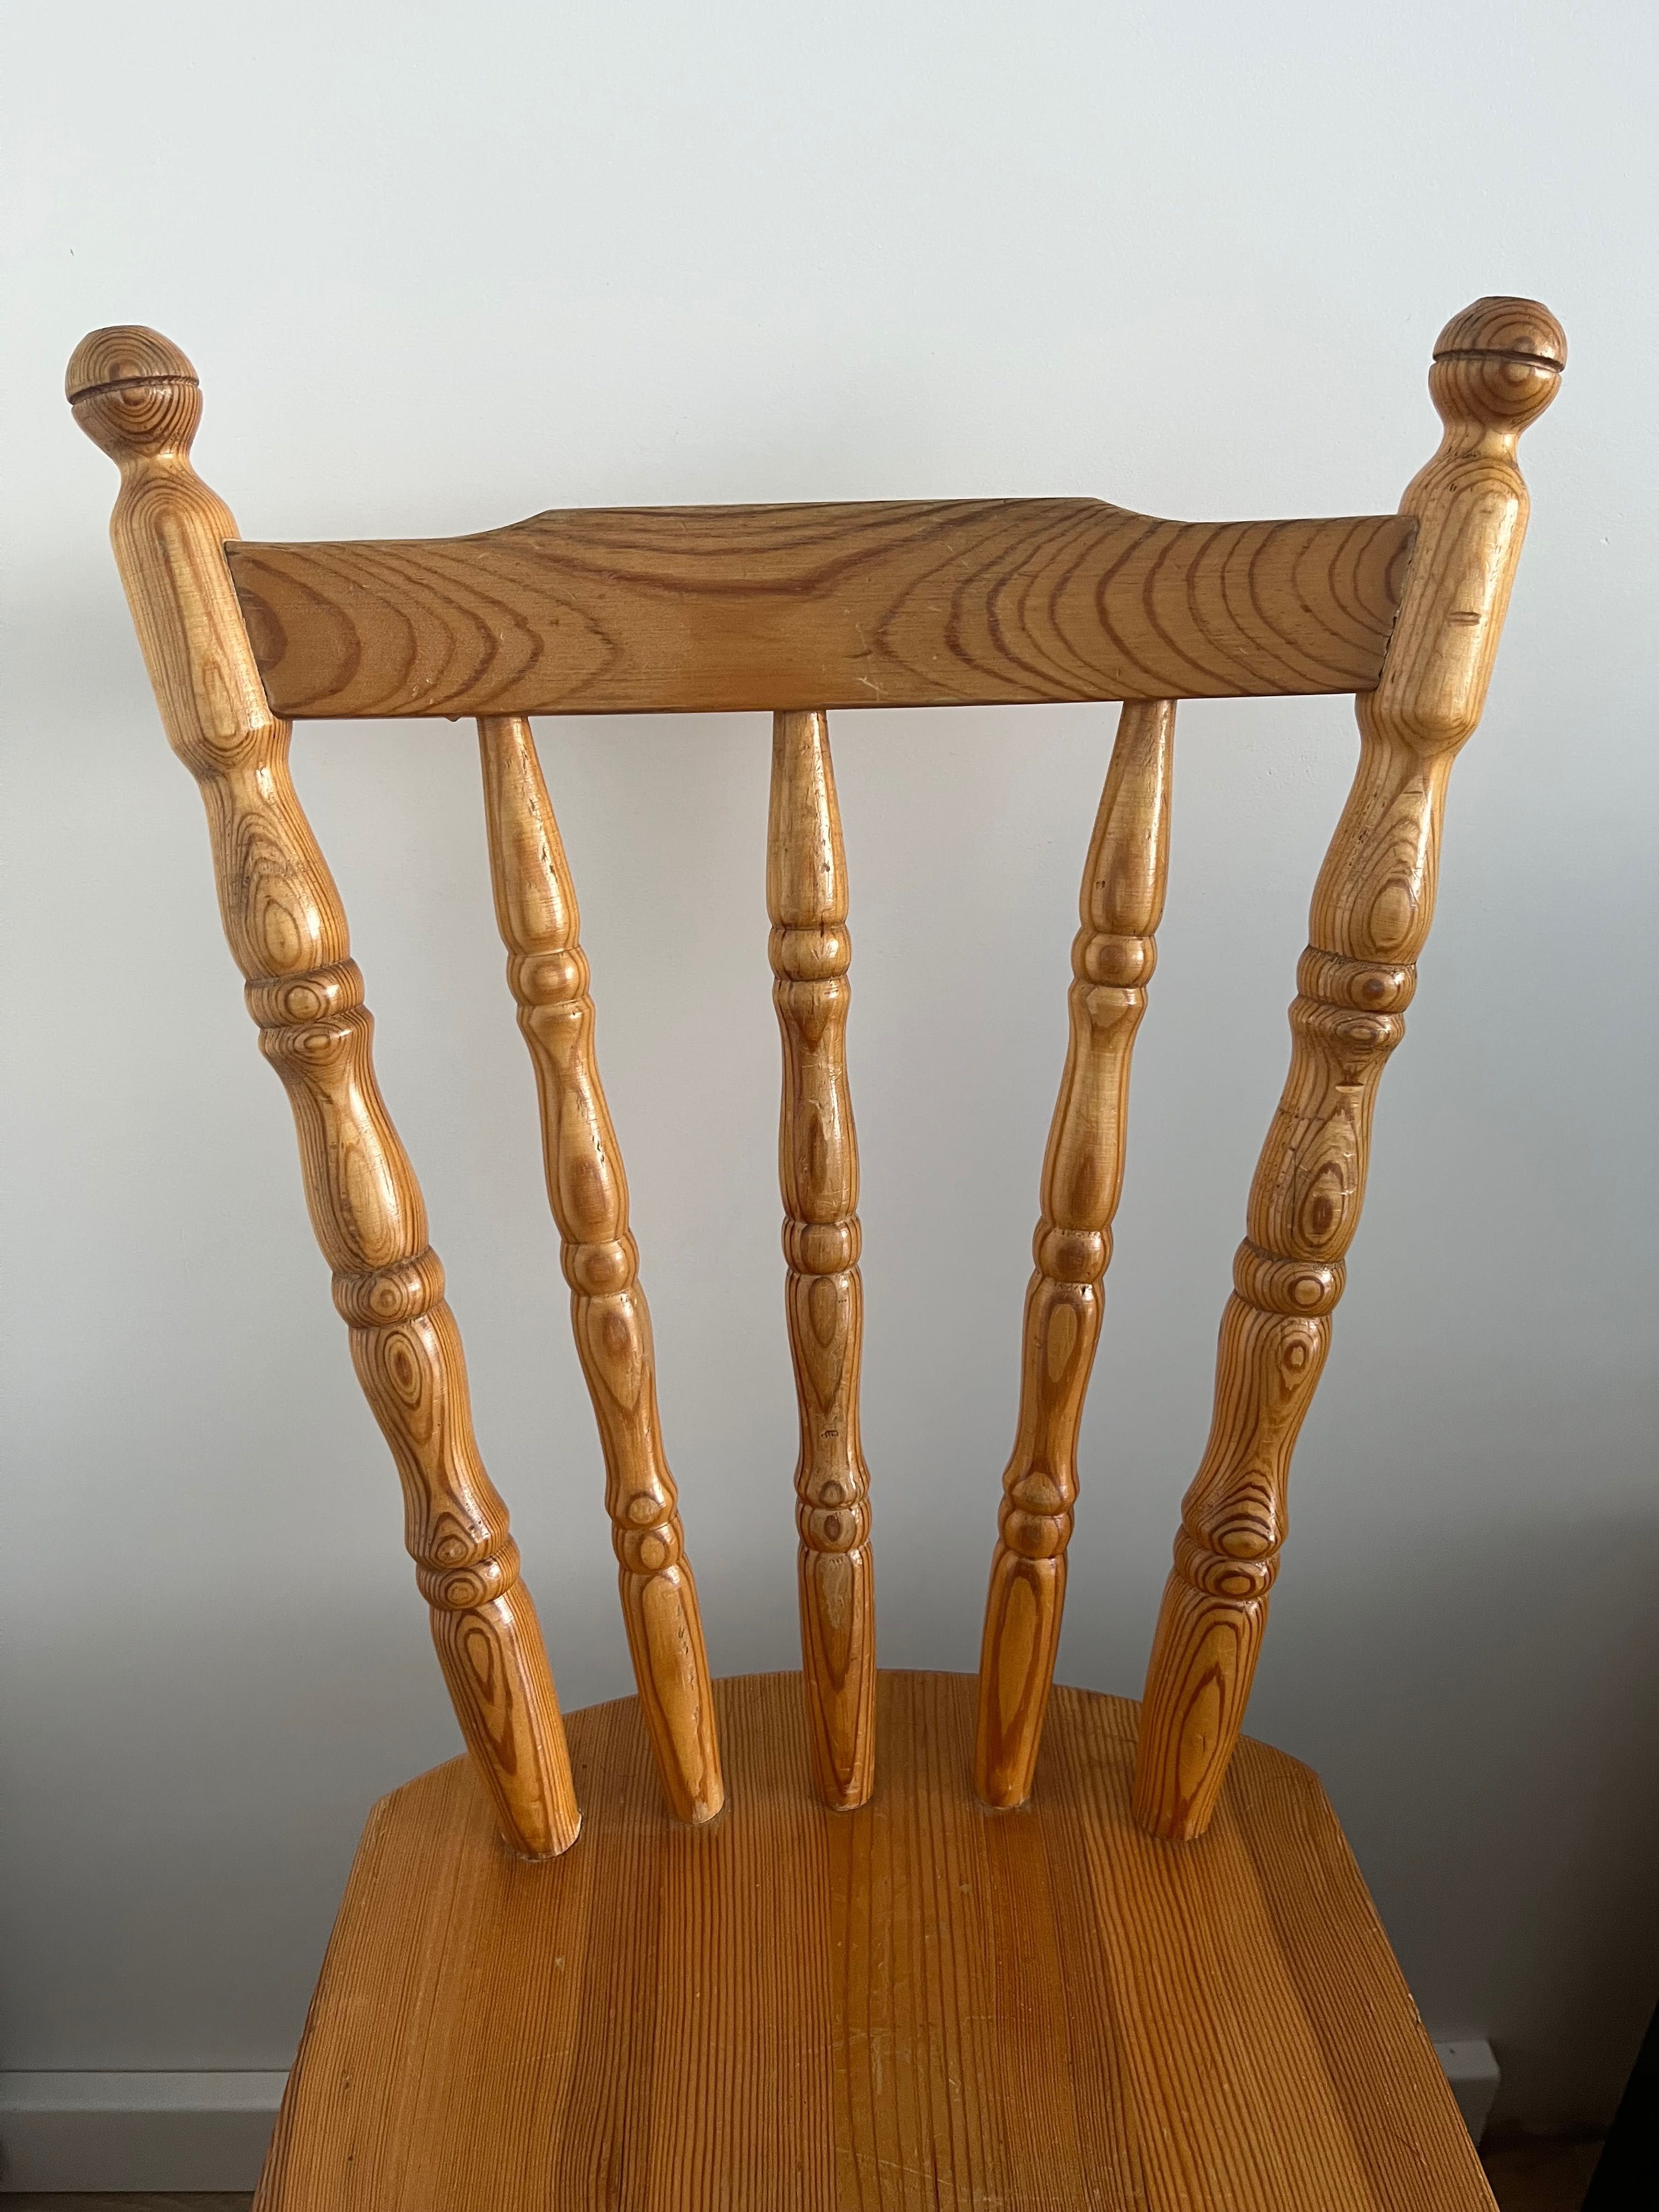 Krzesło drewniane patyczak fabryka mebli giętych prl vintage